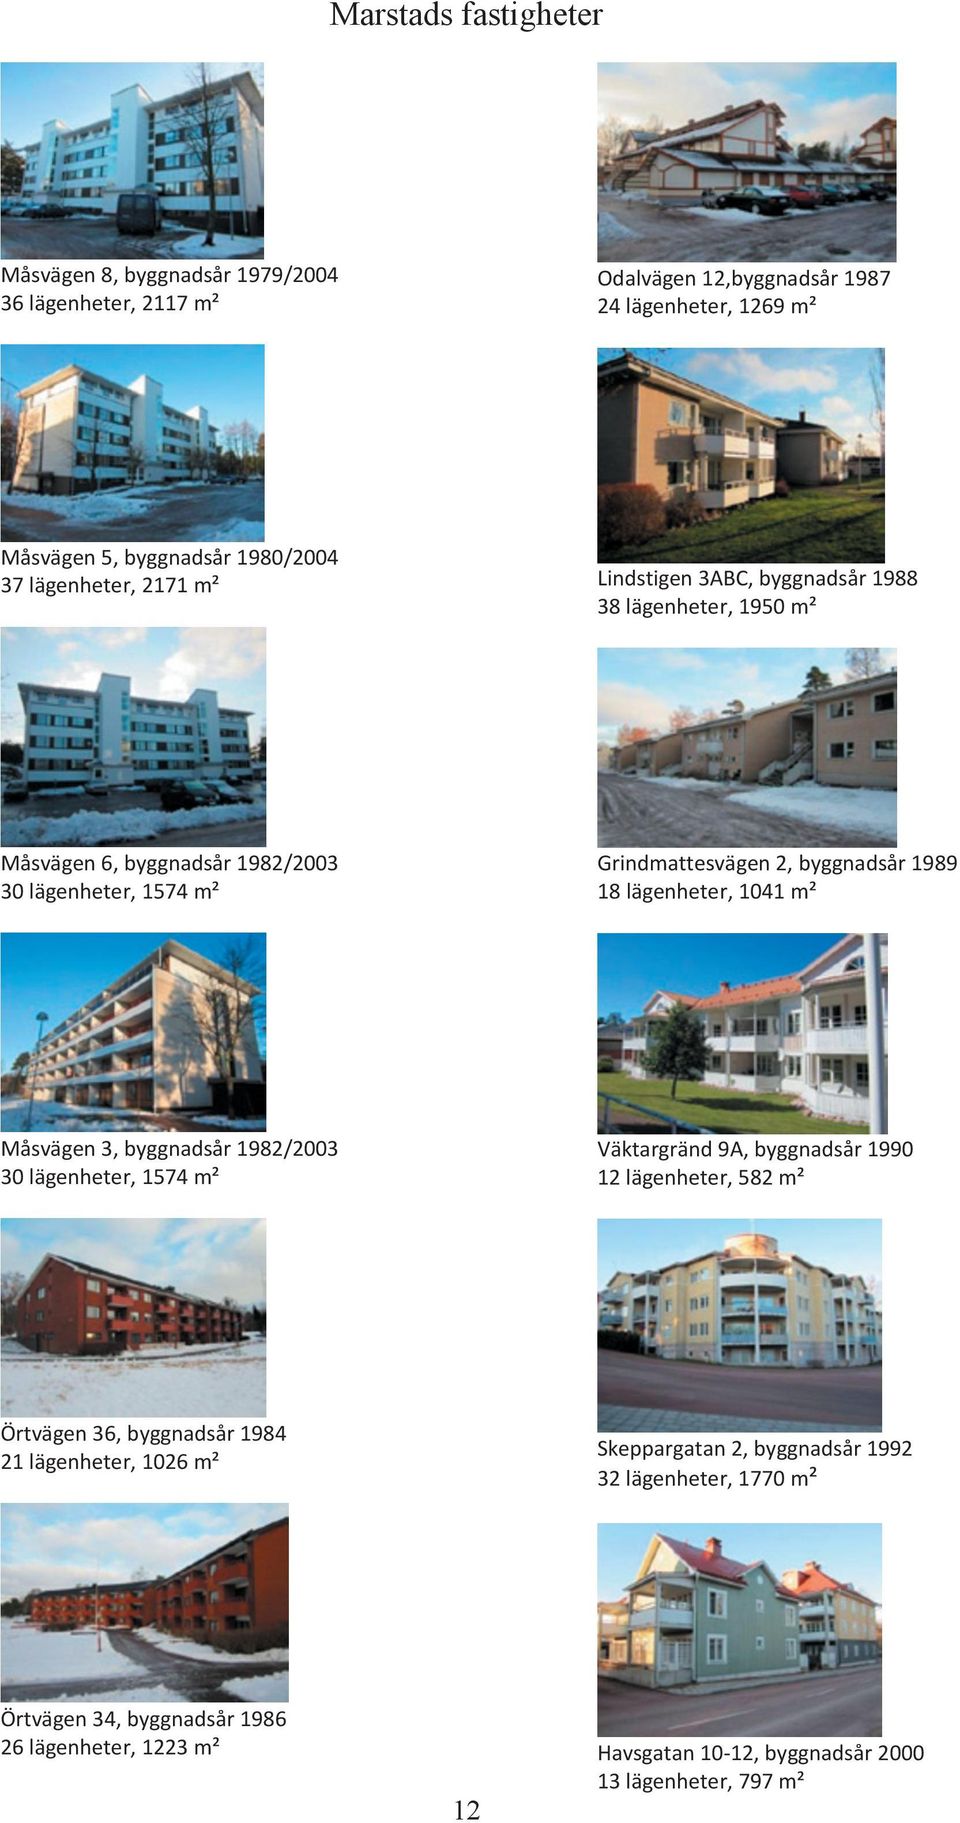 lägenheter, 1041 m² Måsvägen 3, byggnadsår 1982/2003 30 lägenheter, 1574 m² Väktargränd 9A, byggnadsår 1990 12 lägenheter, 582 m² Örtvägen 36, byggnadsår 1984 21